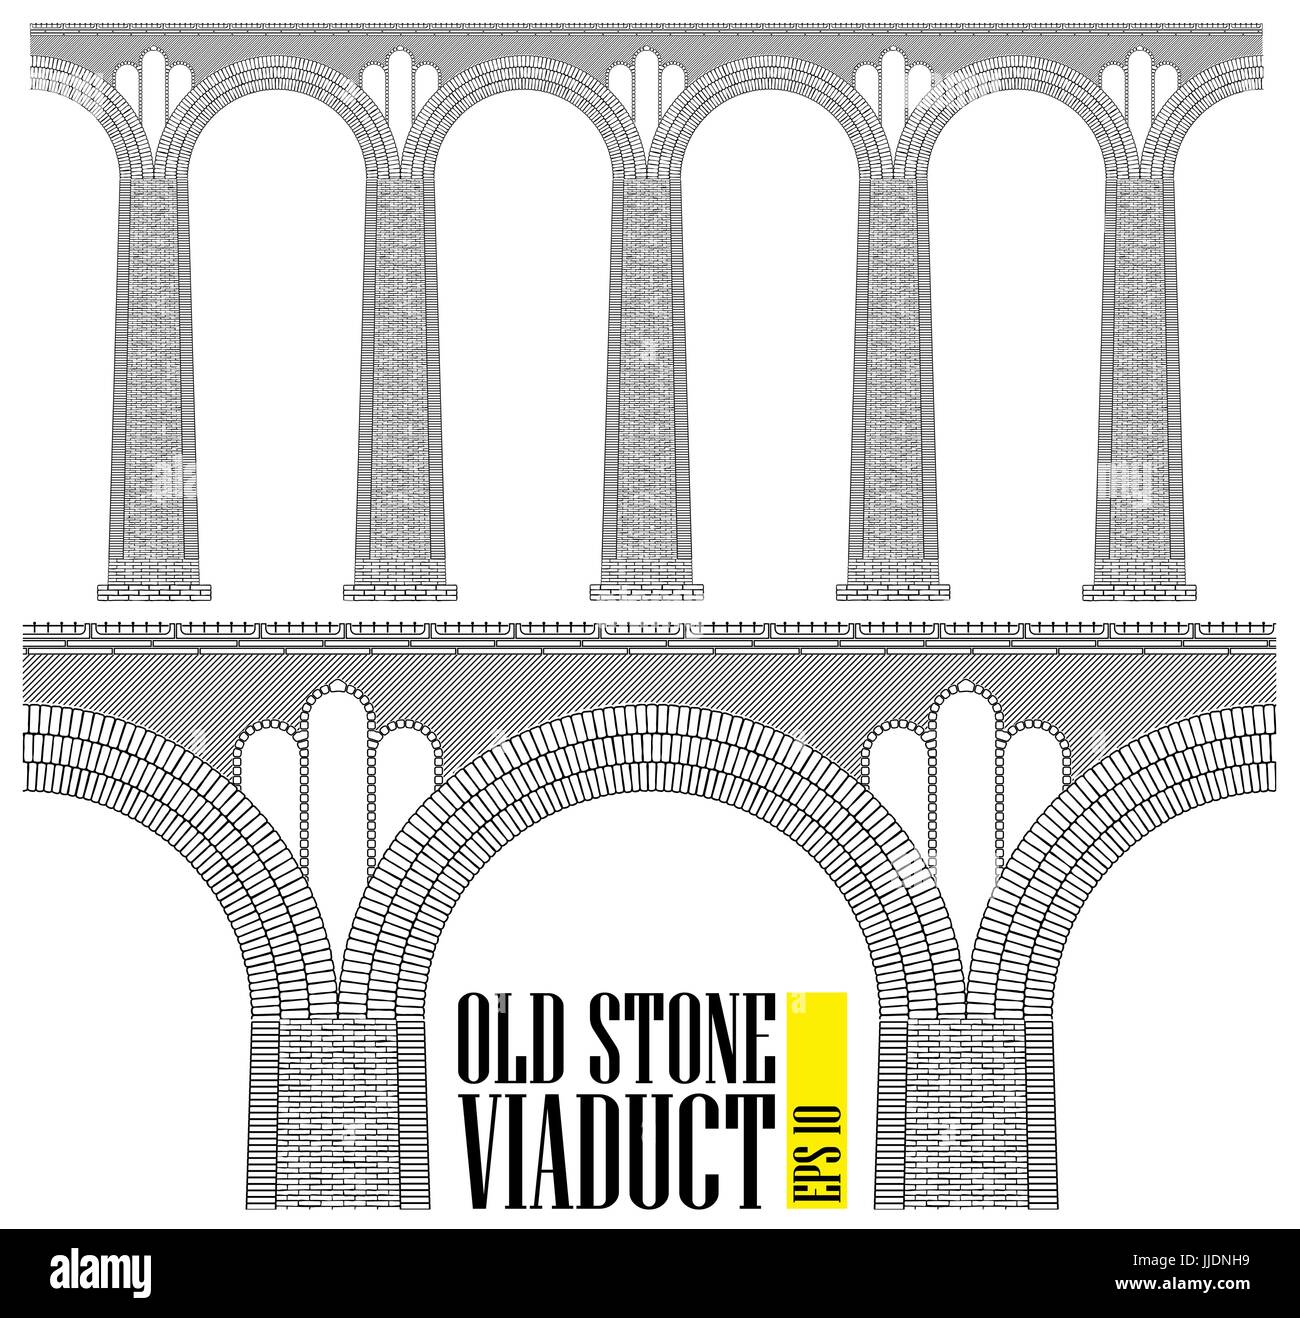 Eine alte hohe steinerne Viadukt. Gebaut aus Stein und Ziegel eine riesige Brücke. Auch die kleinsten Details sind sichtbar. Stock Vektor